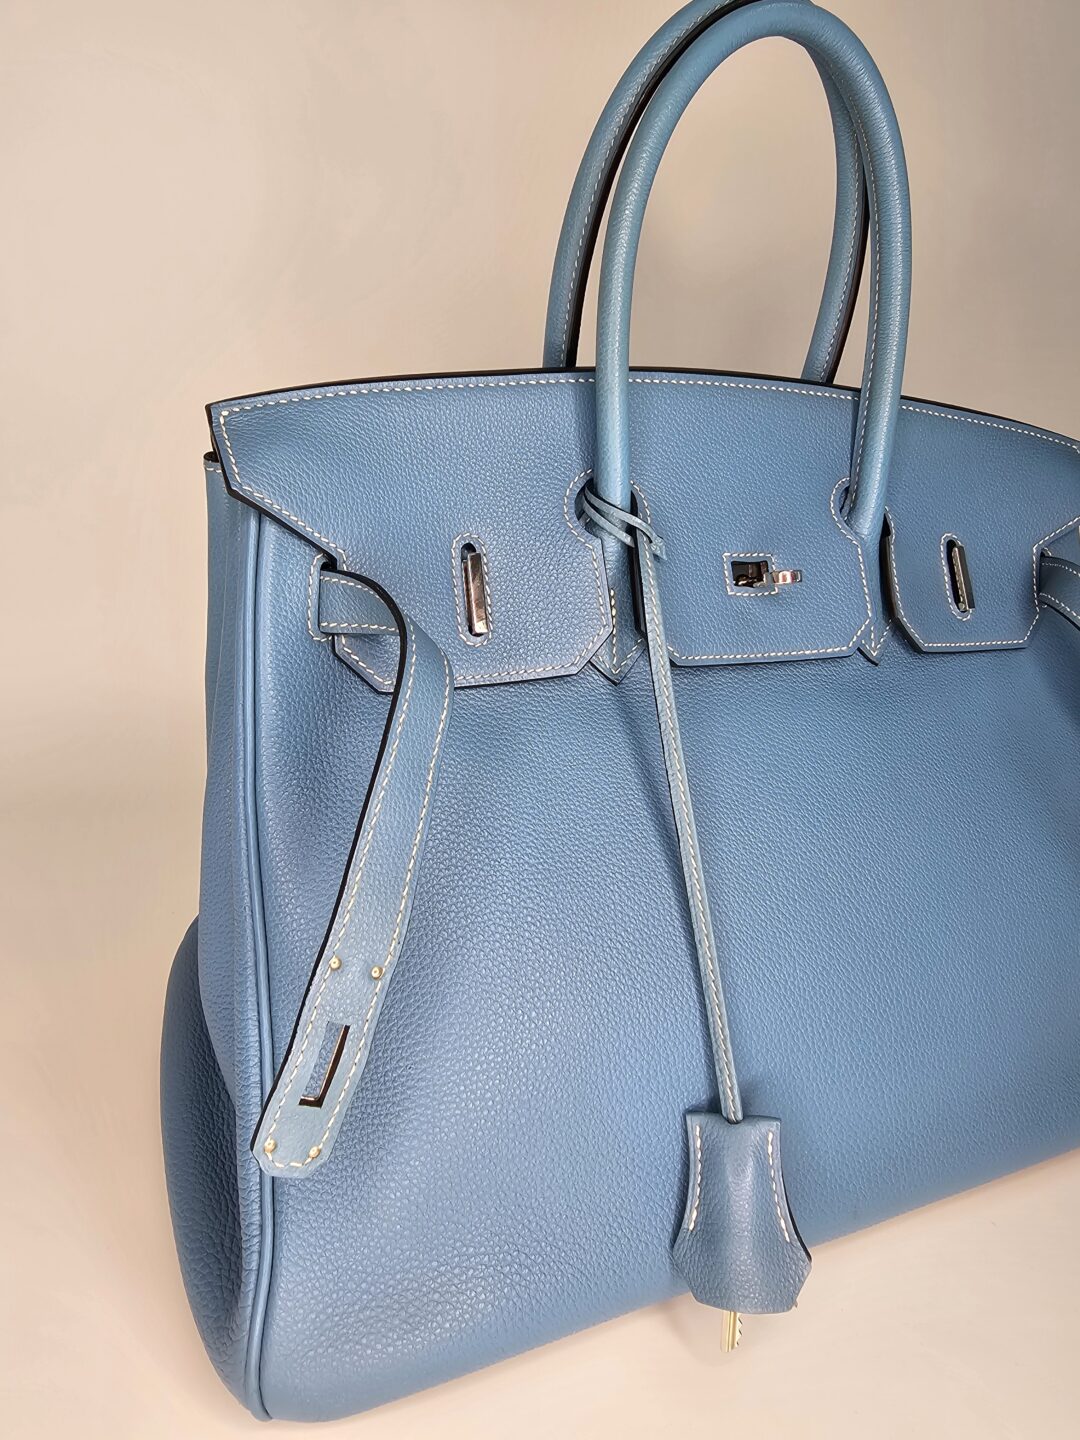 Hermès Birkin 35 Bag Blue Jean Togo Leather - Palladium Hardware